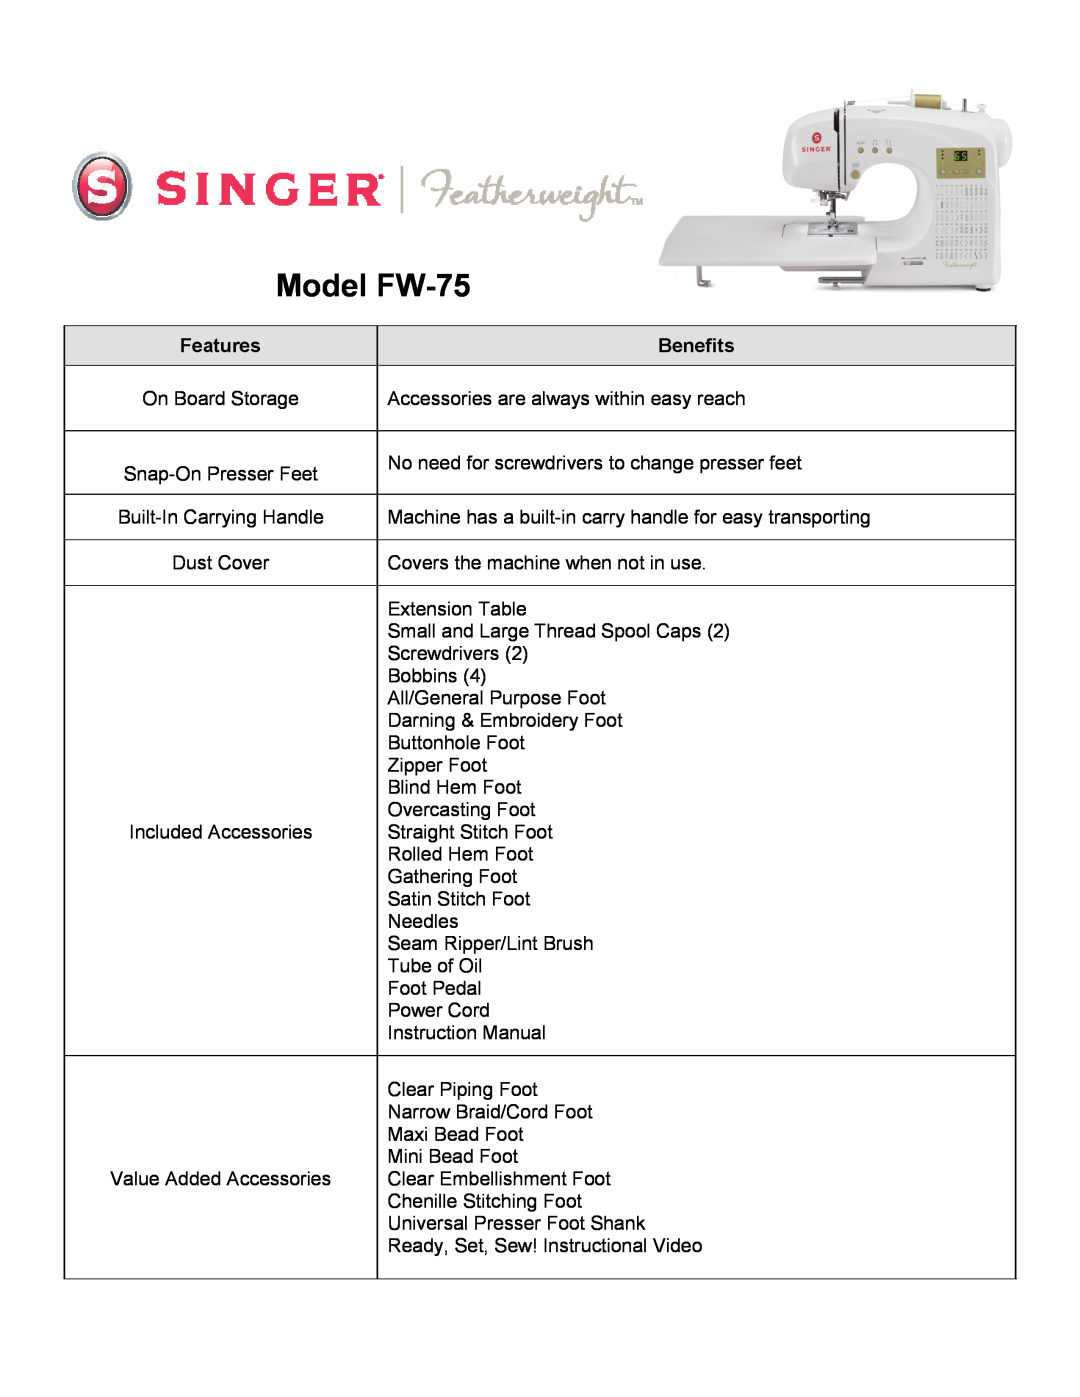 Singer warranty Features, Benefits, Model FW-75 